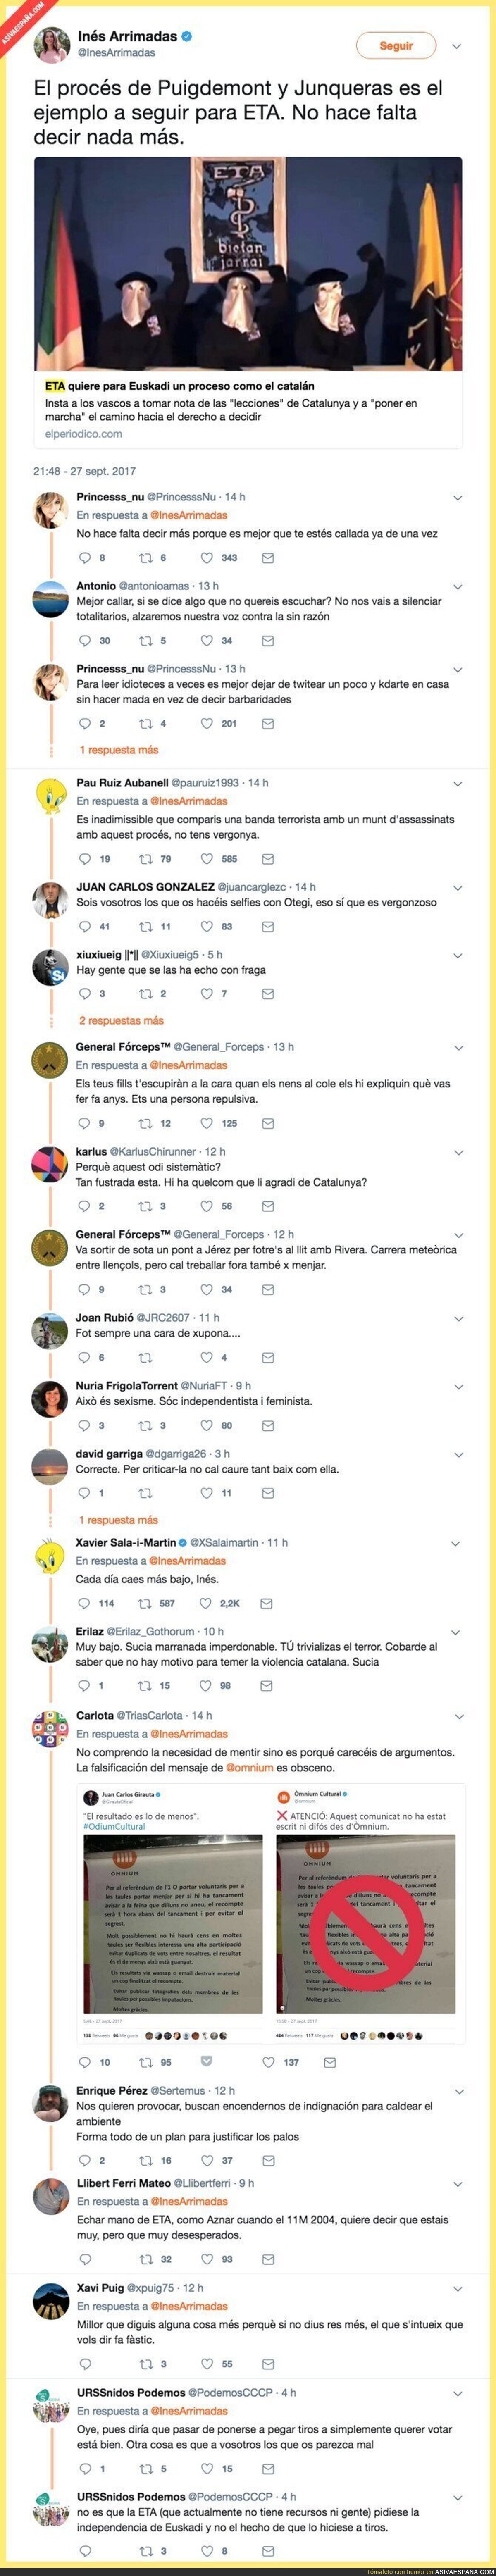 Inés Arrimadas se gana el odio de Twitter por escribir esto sobre el referéndum catalán y ETA